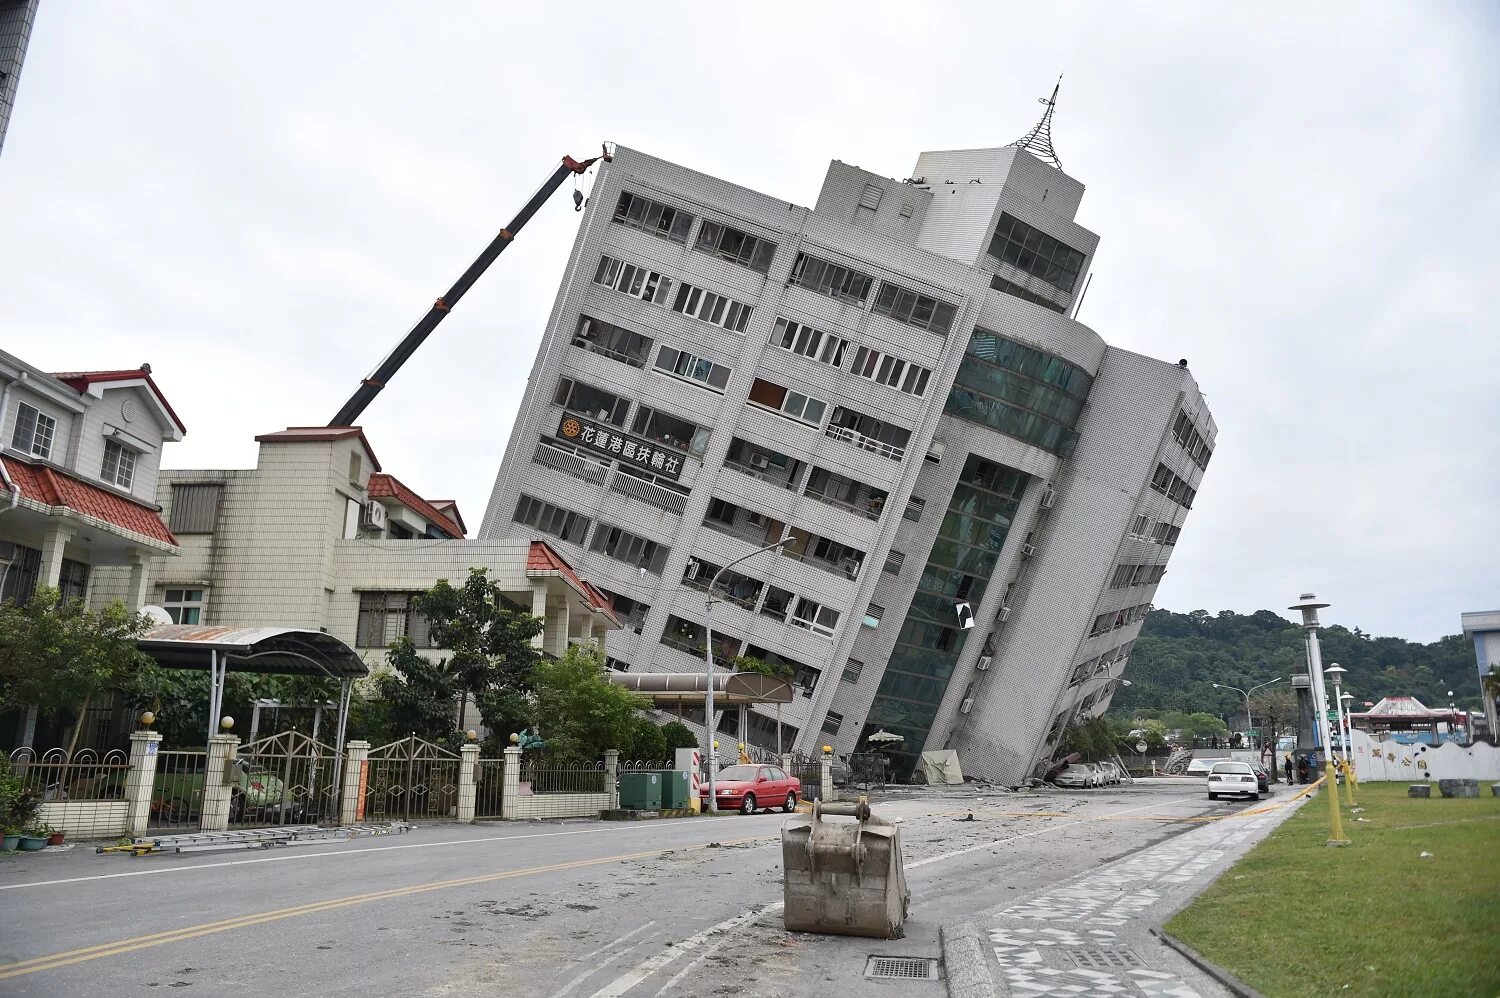 Тайвань землетрясение тайланд. Гостиница Маршал Тайвань землетрясение. Землетрясение на Тайване 1999. Землетрясение Хуалянь. Гостиница Маршал Тайвань.